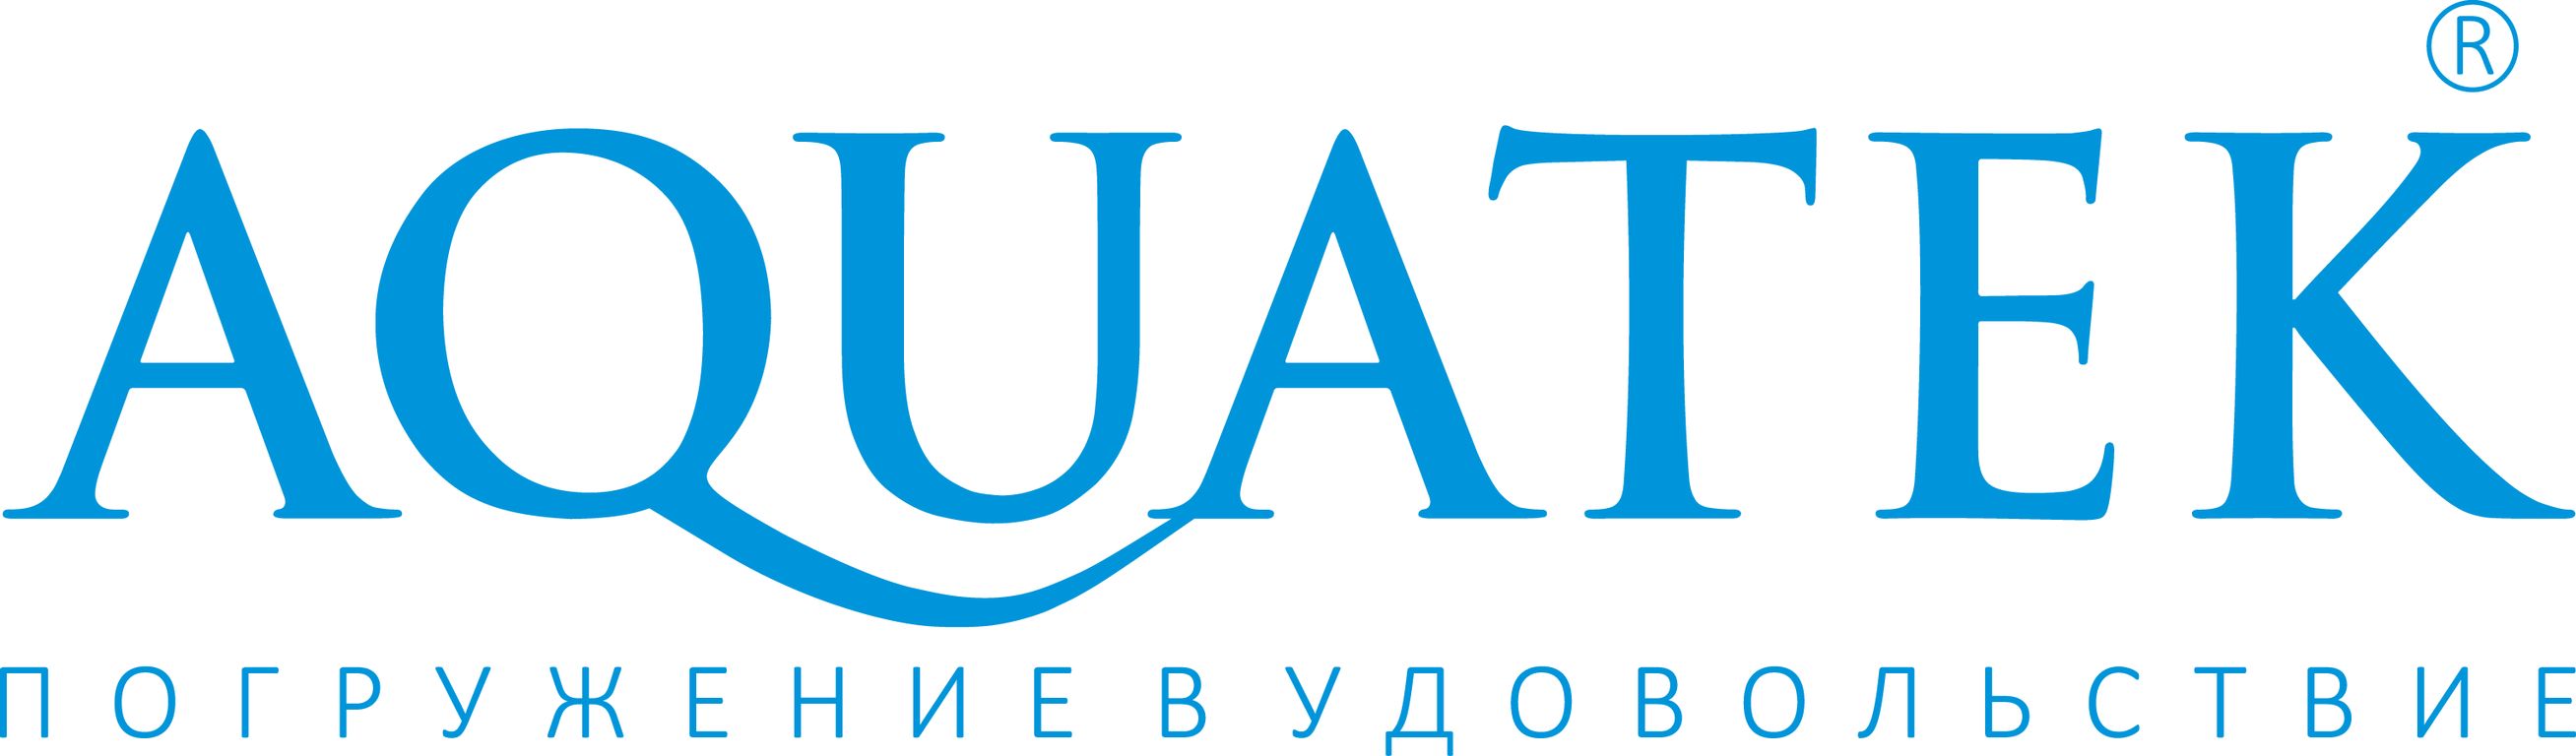 Акриловые ванны компании акватек. Логотип.